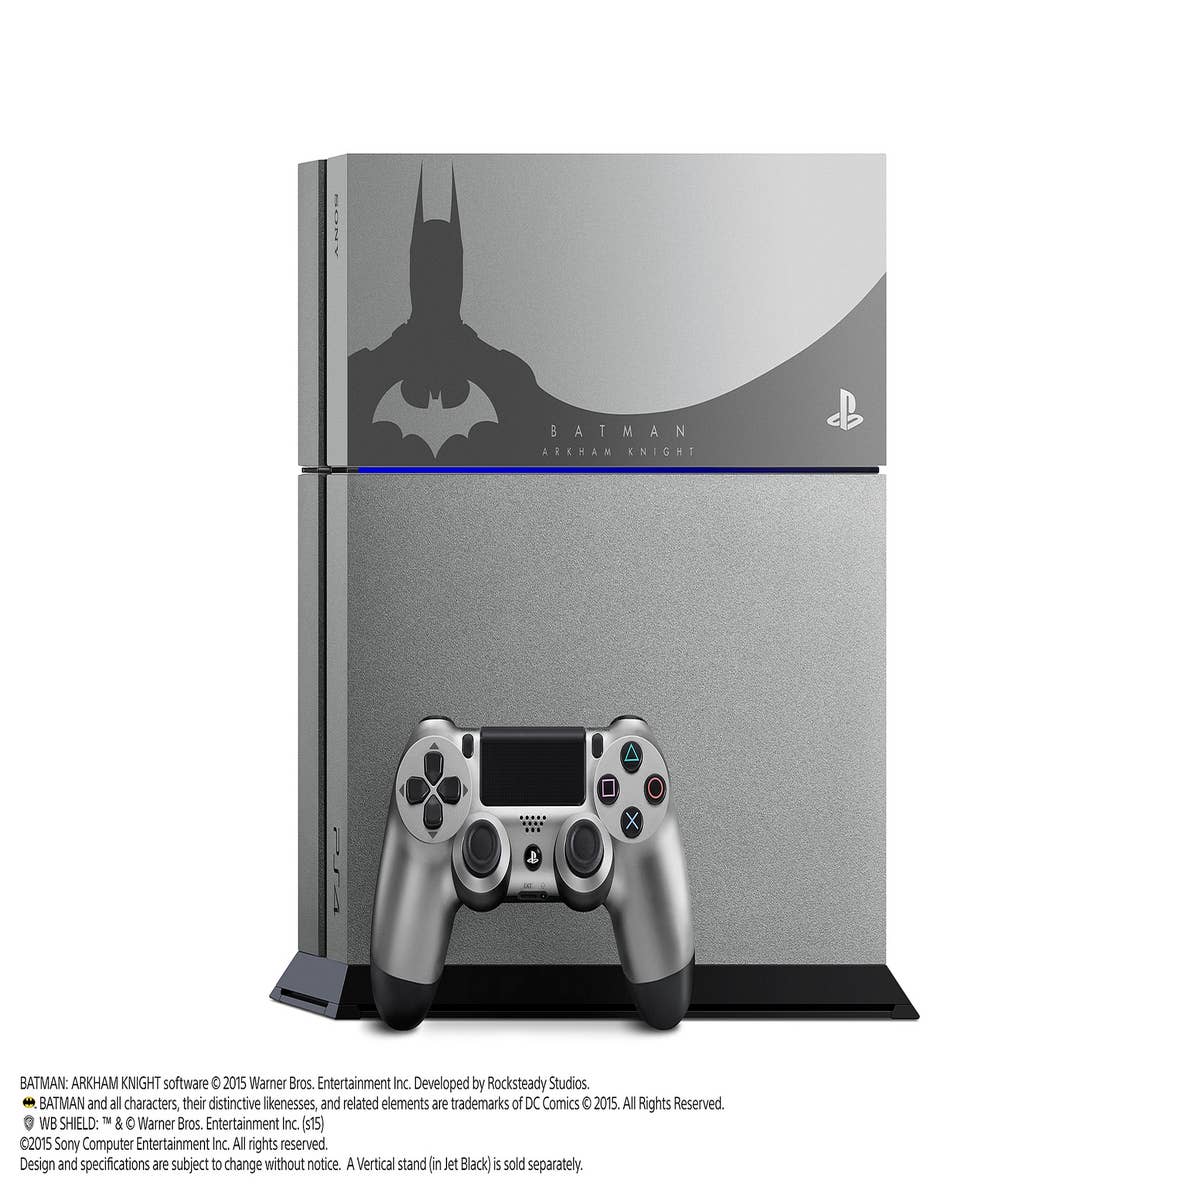 PlayStation 4 tendrá una edición especial de Batman: Arkham Knight |  